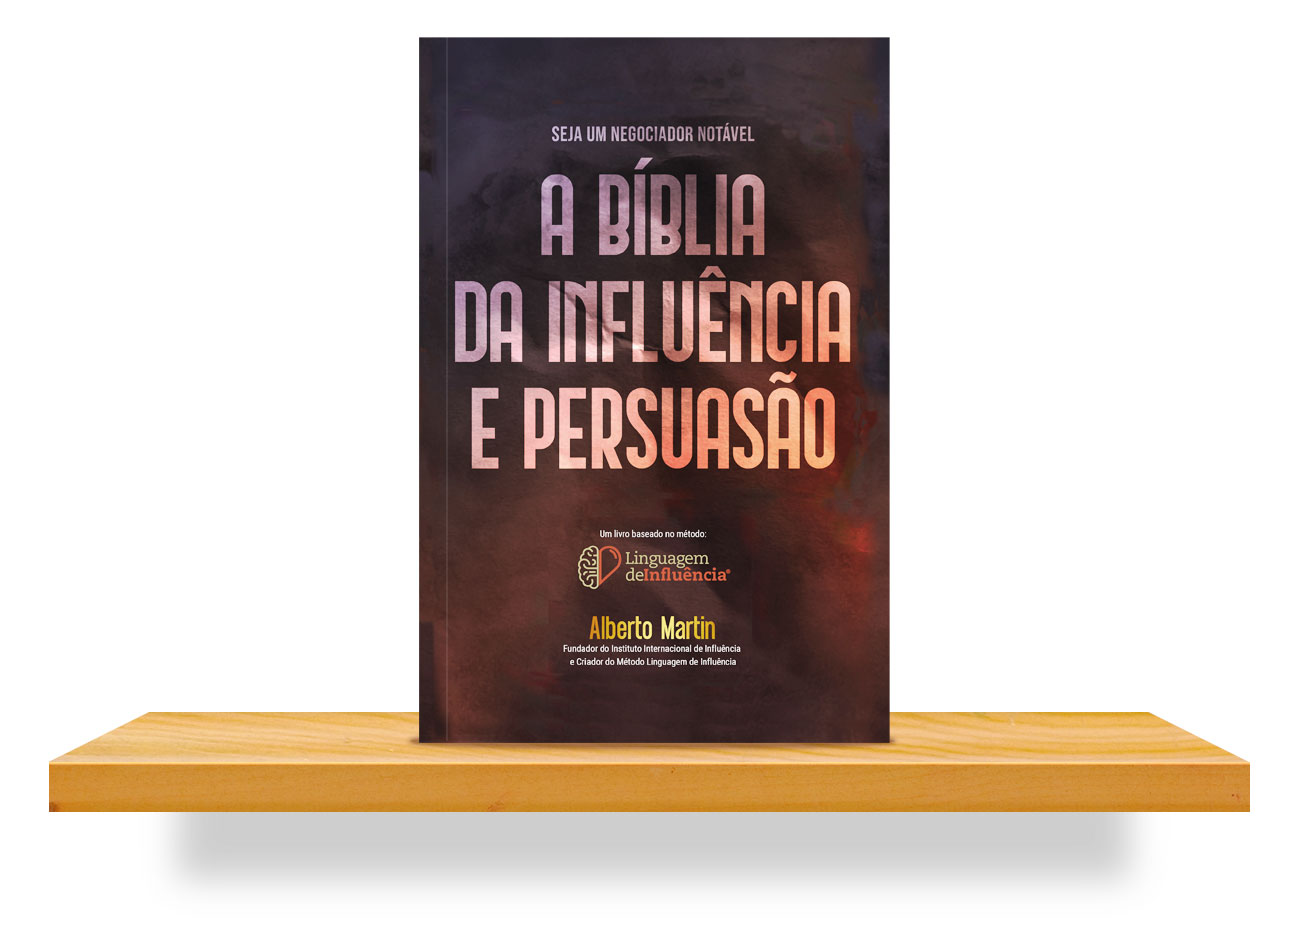 a-biblia-da-influencia-persuasao-montra-beebook